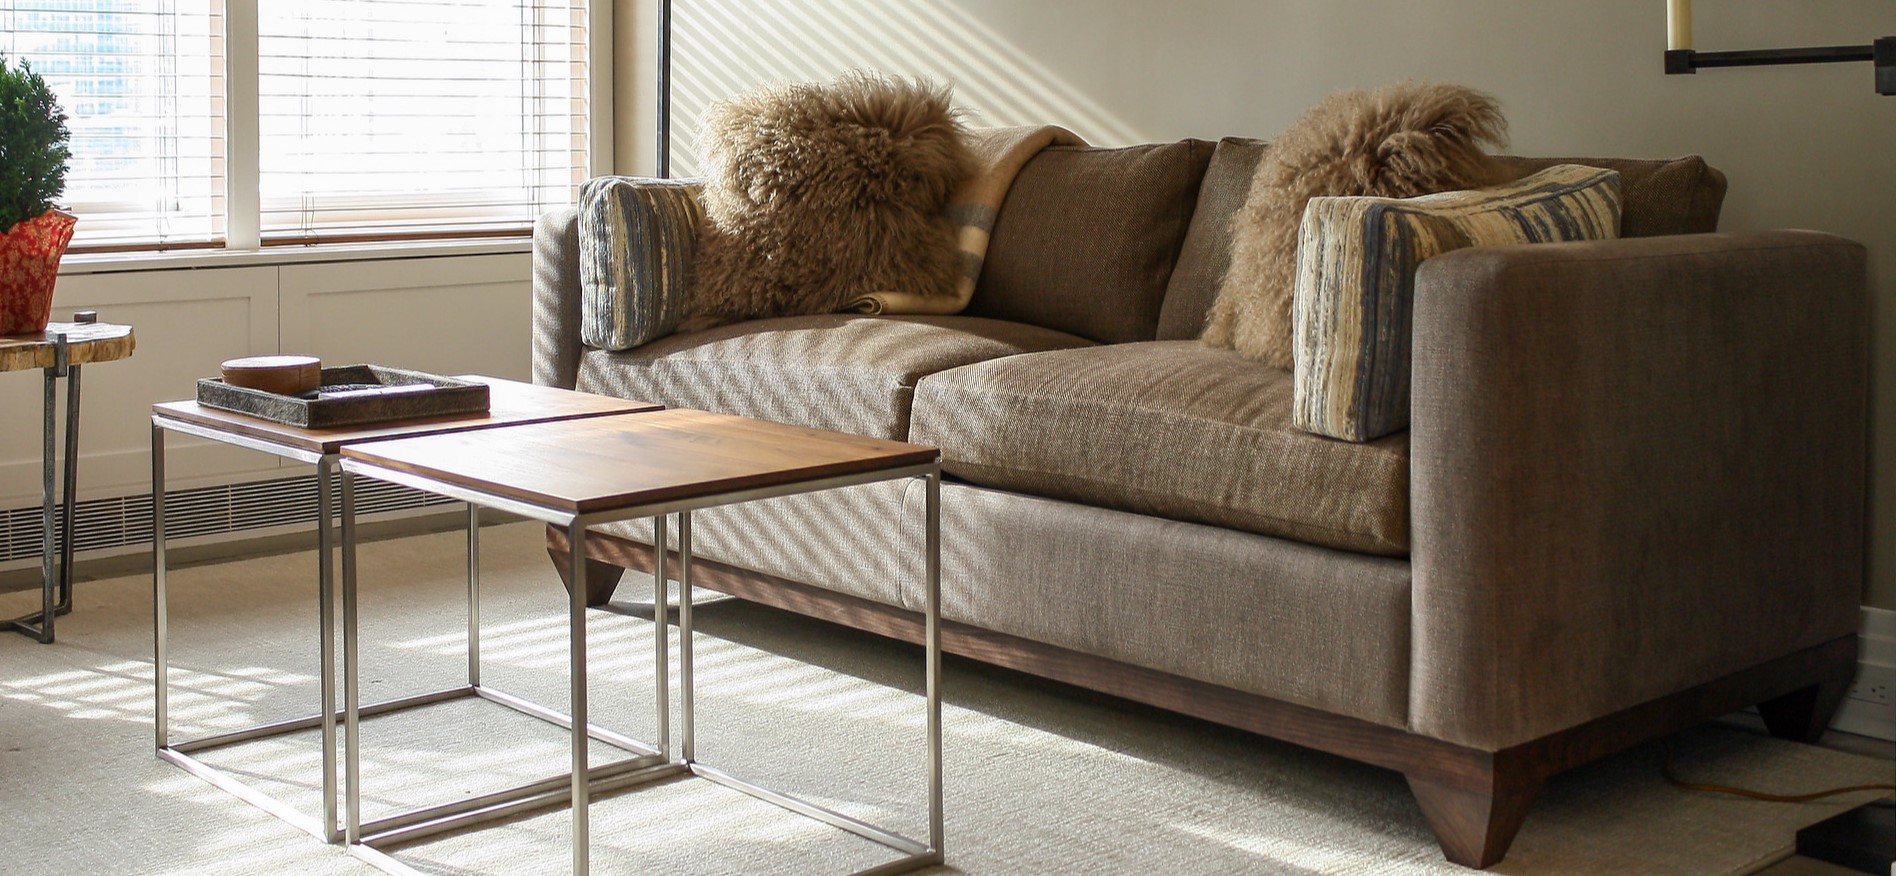 Коричневый диван с деревянным основанием подойдет для скандинавского интерьера